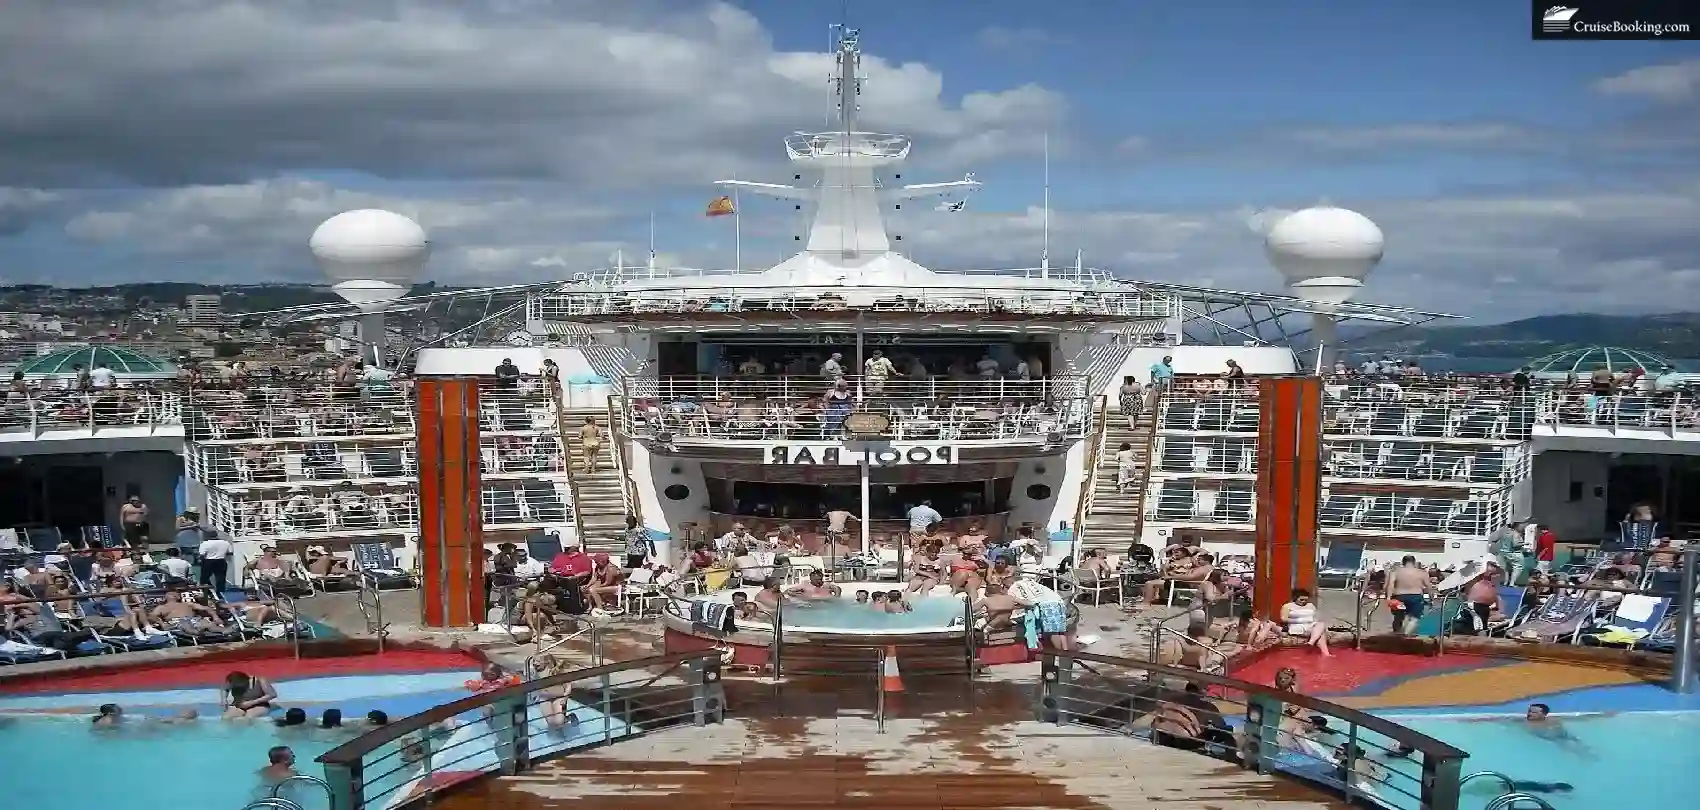 Cruise Ship Deck